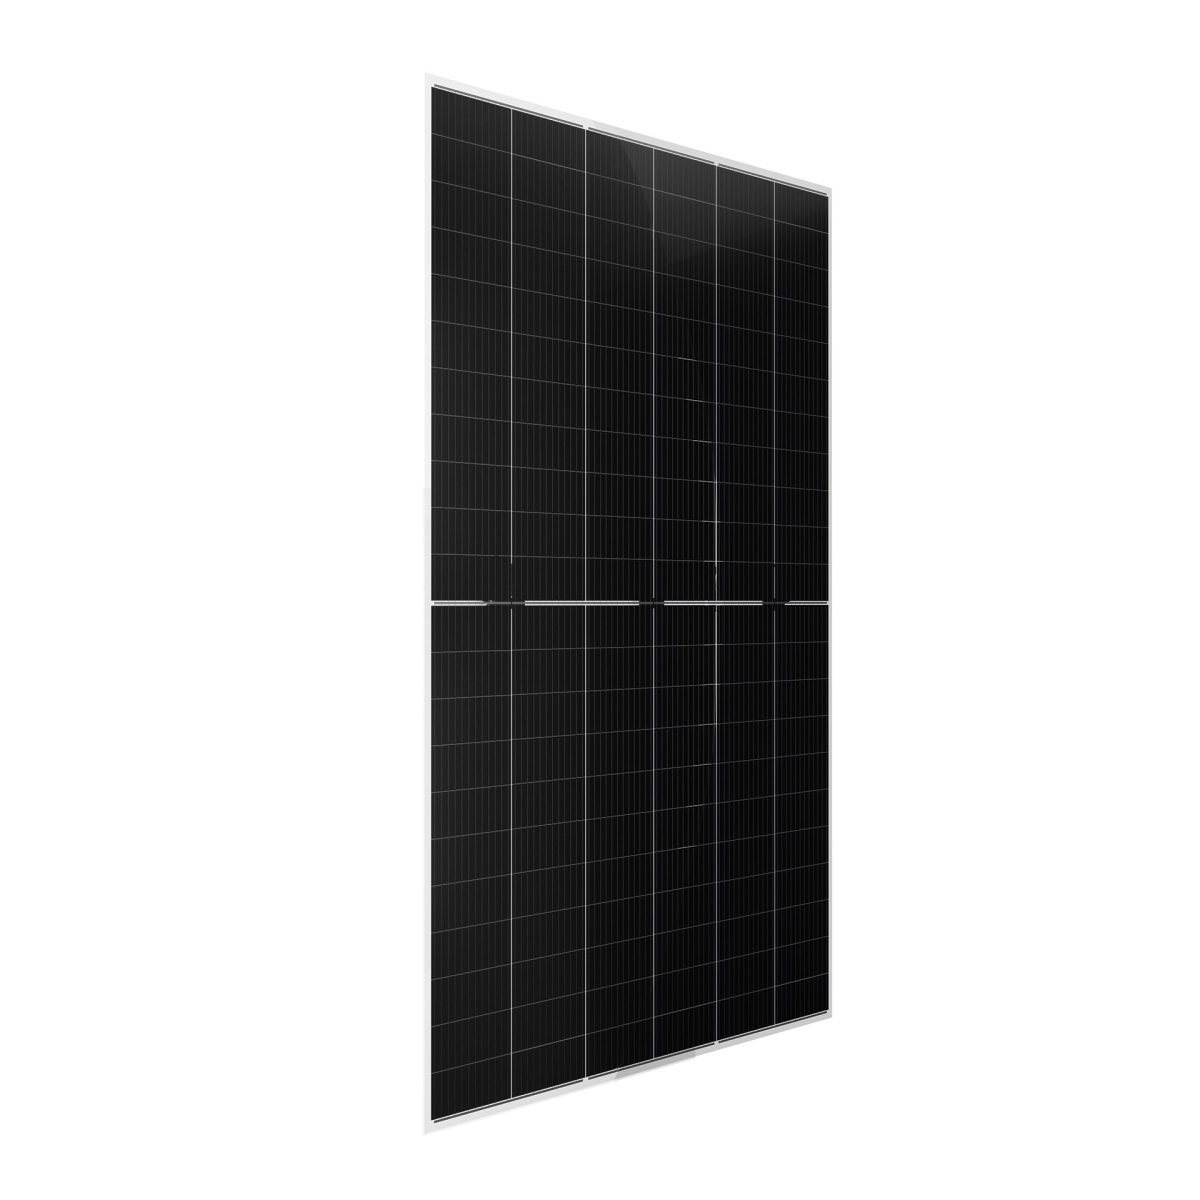 CW Enerji 655Wp M12 132PM Zellen Bifacial G2G Half-Cut MB Solarmodul